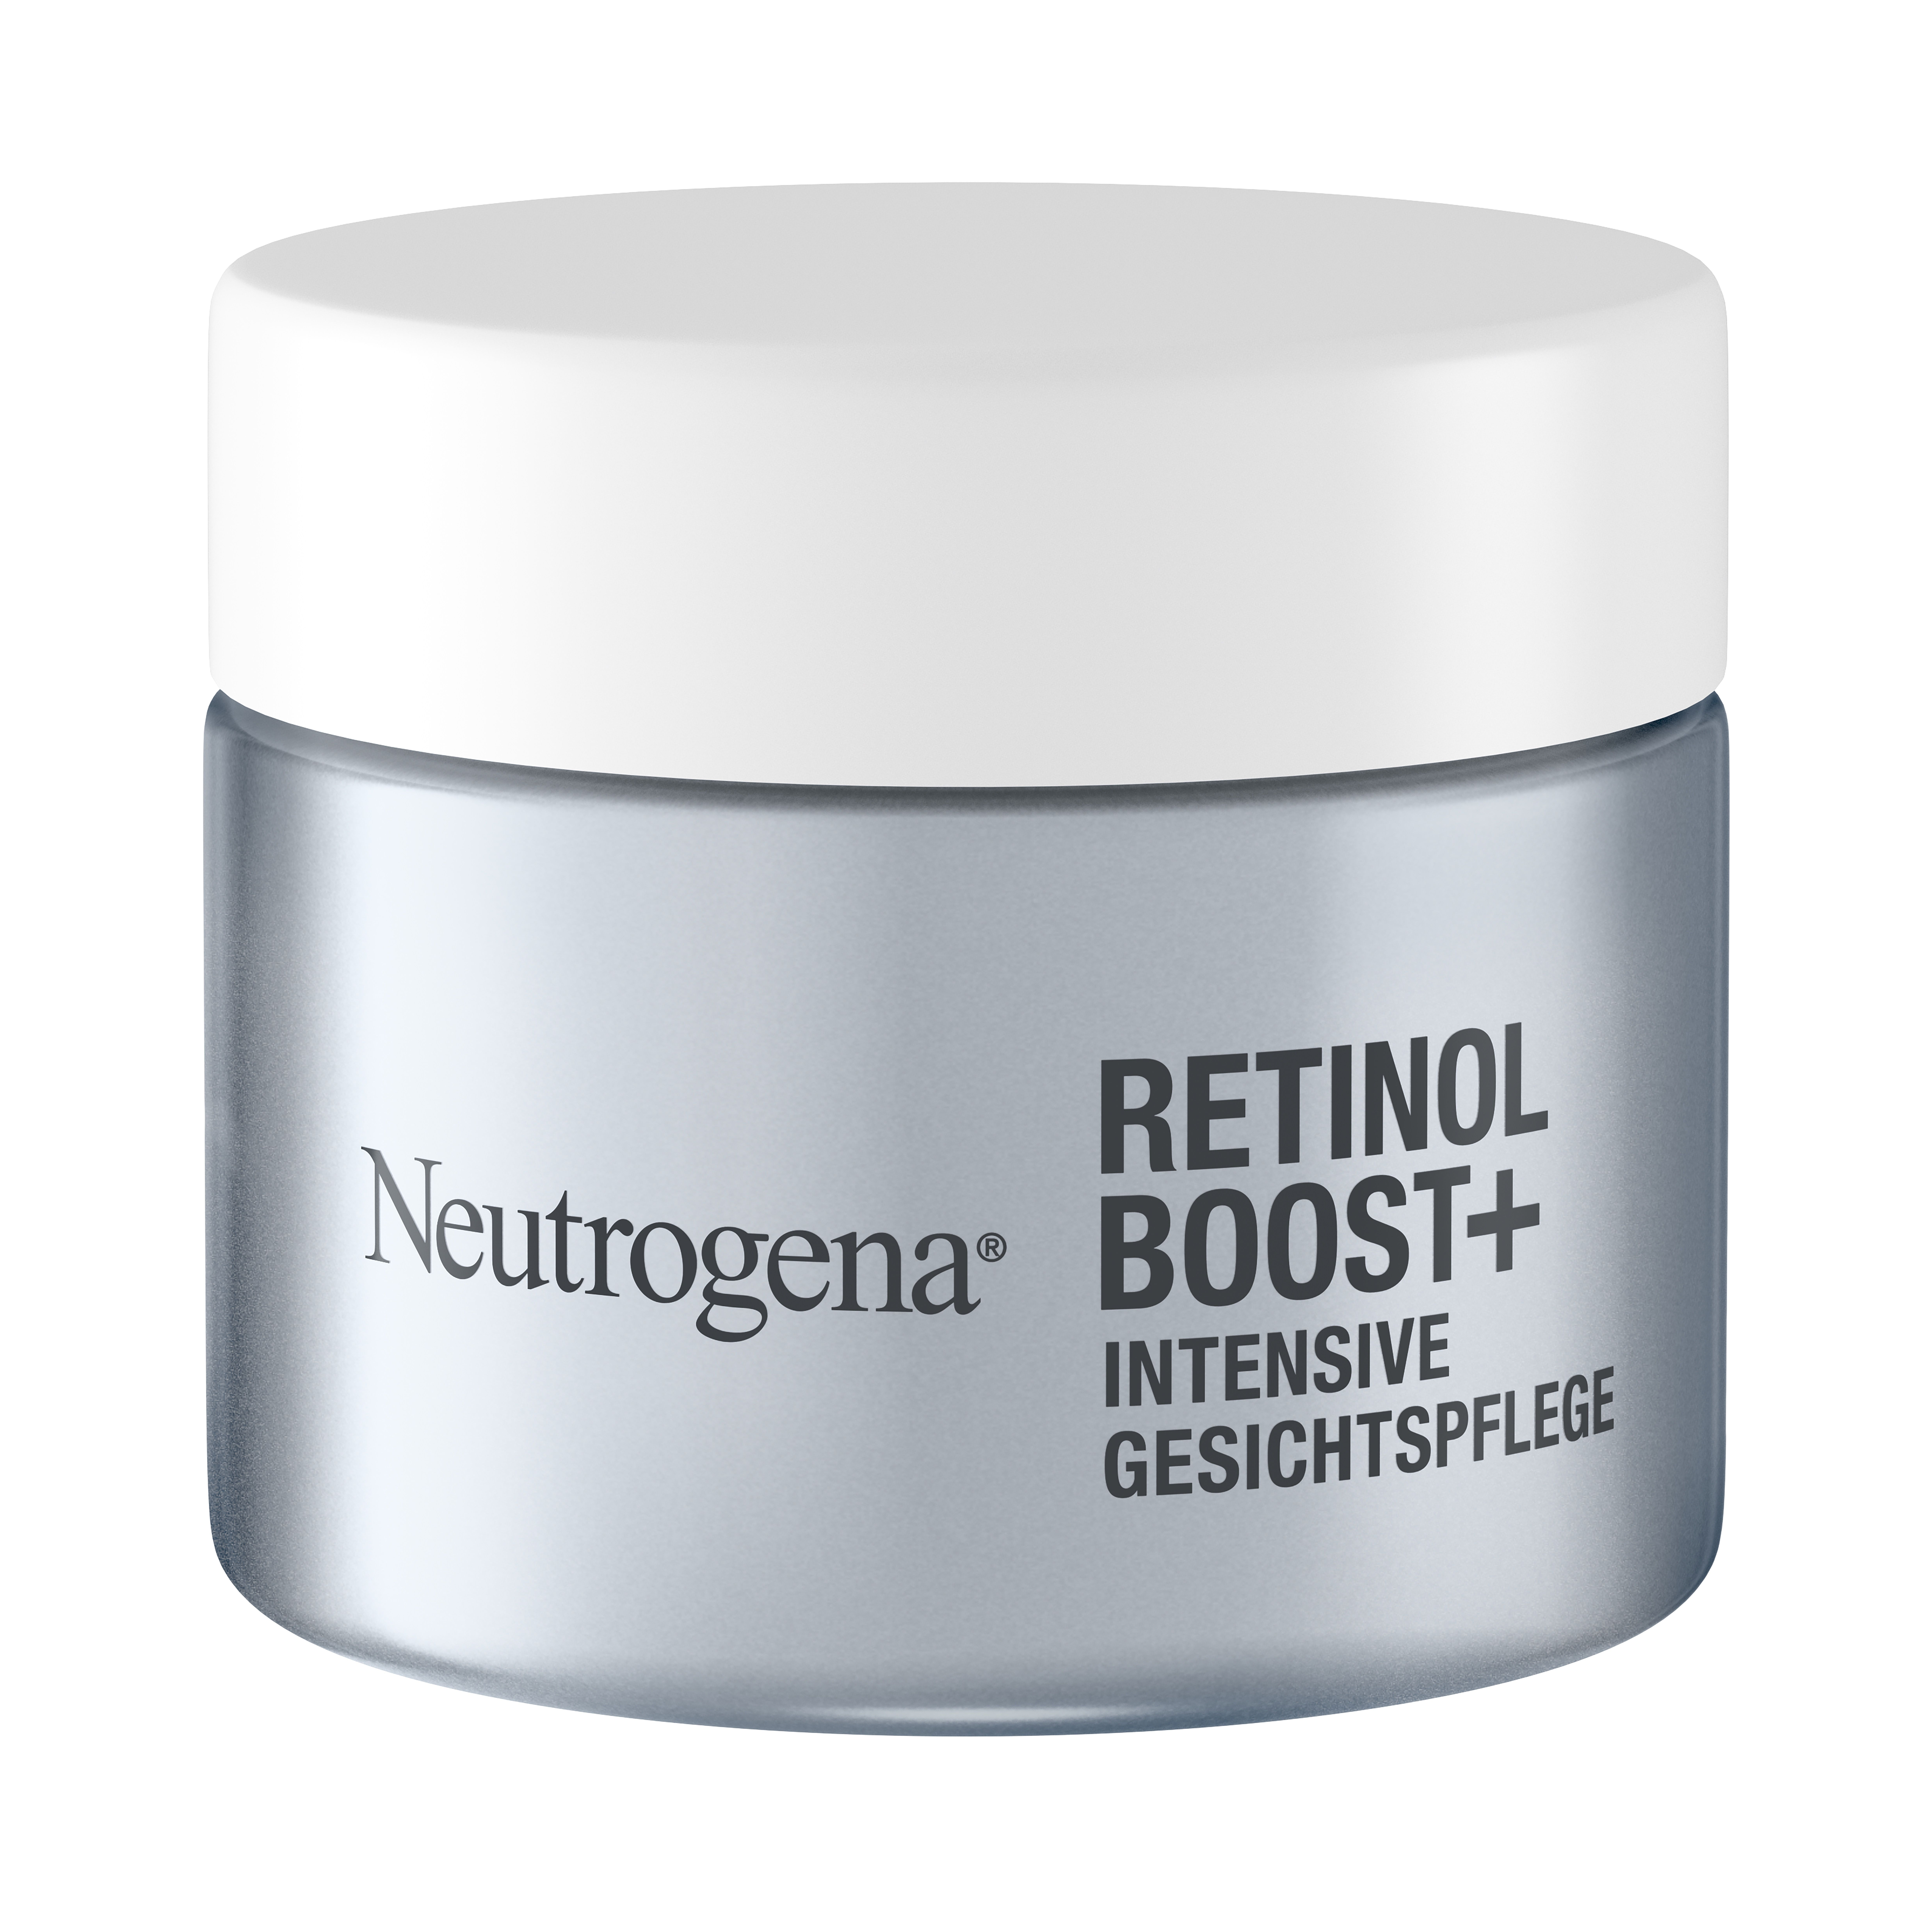 Neutrogena® Retinol Boost+ Intensive Gesichtspflege, € 50ml, UVP* 16,99 €